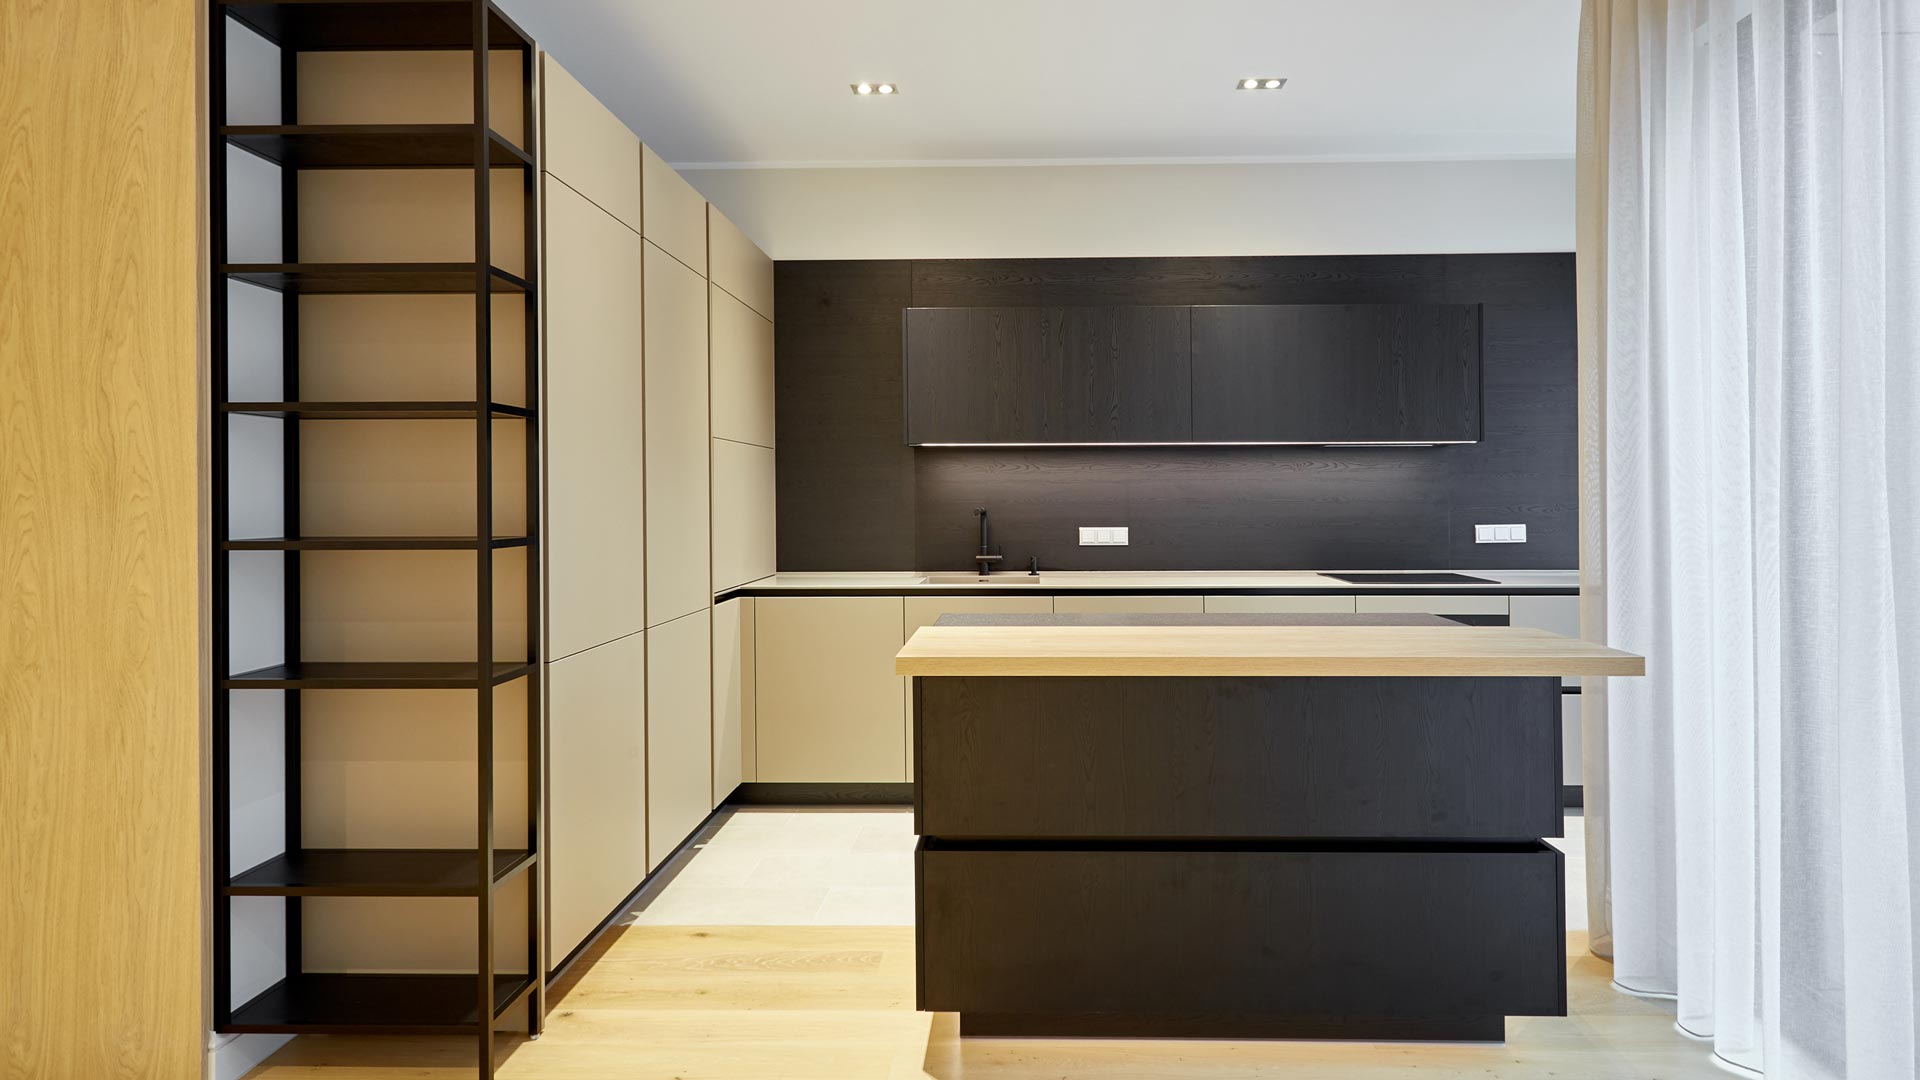 Получившая признание экспертов первоклассного дизайна кухня RIPO в доме премиум-класса Club Central Residence II